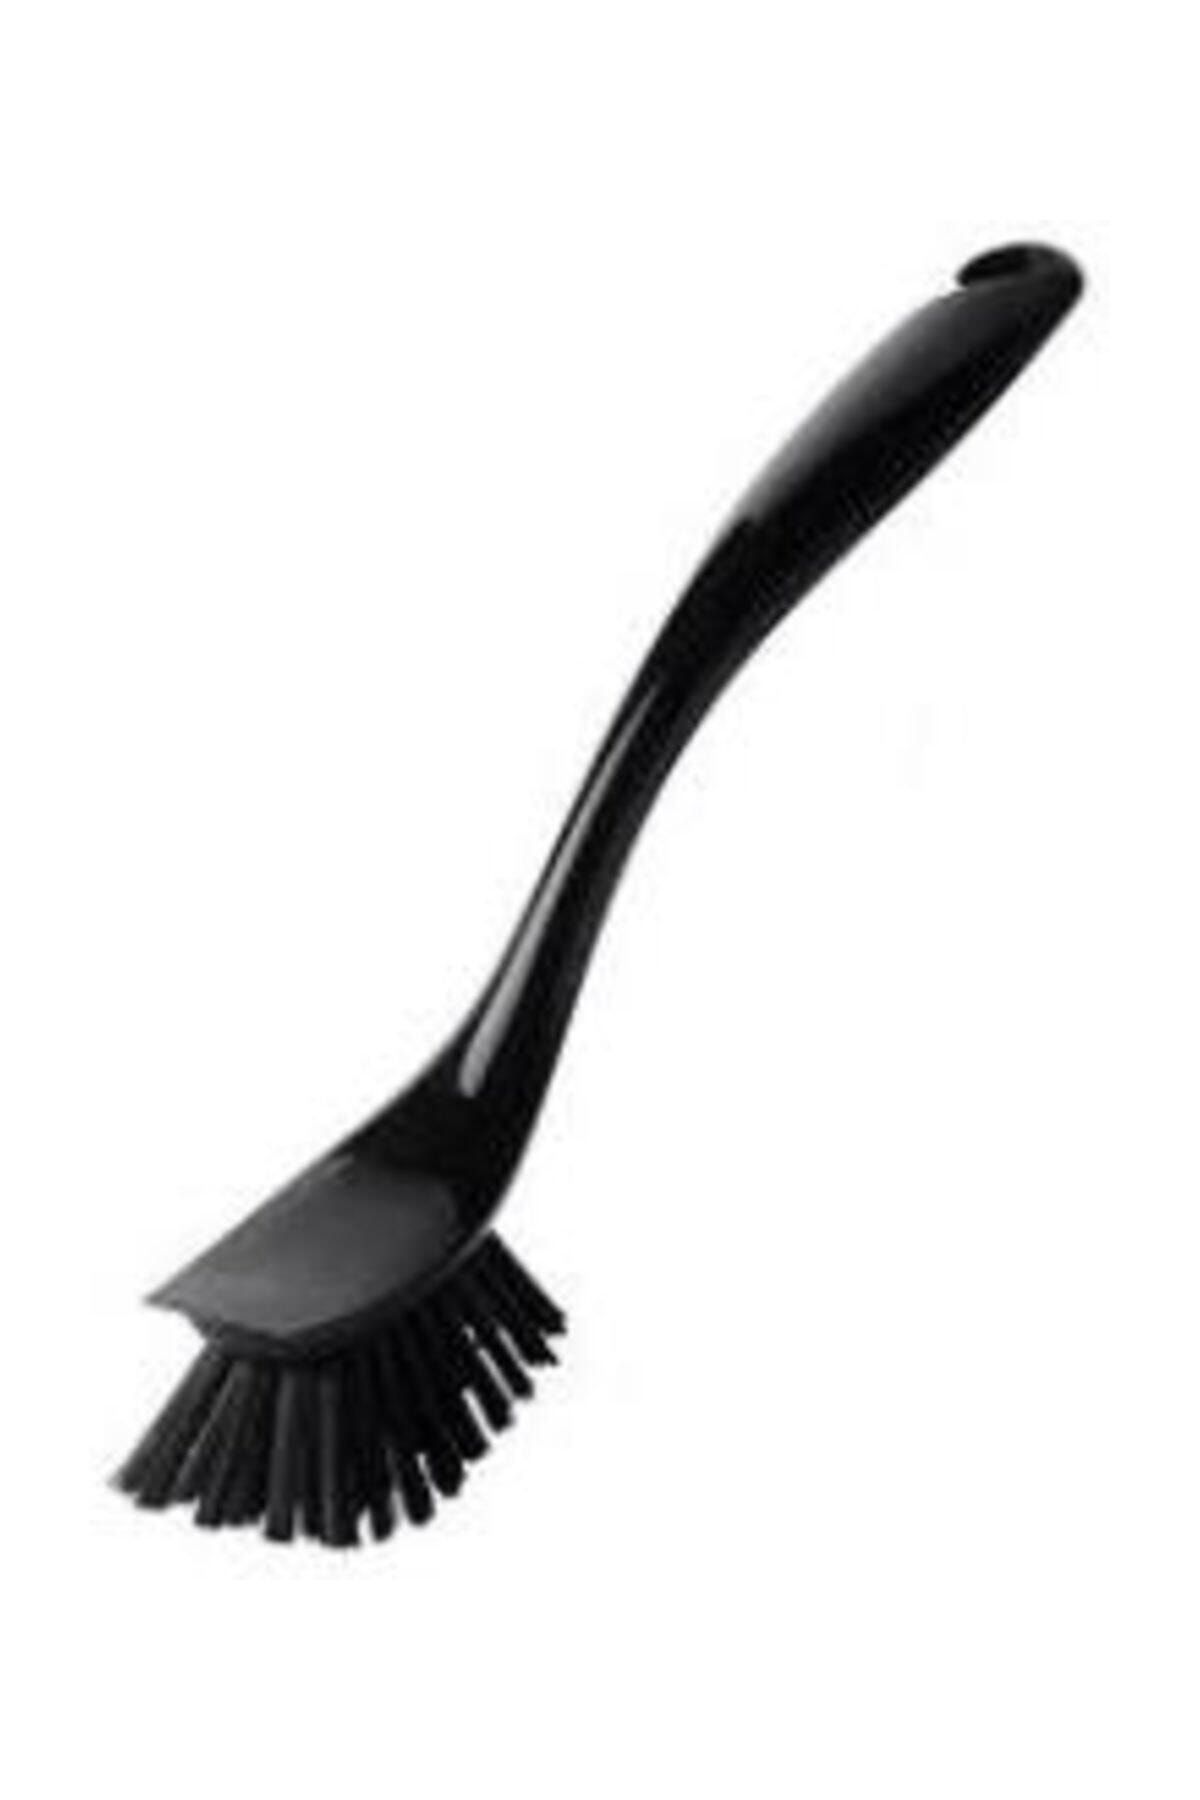 IKEA Antagen Plastik Bulaşık Fırçası- Siyah- Kargo Bedava